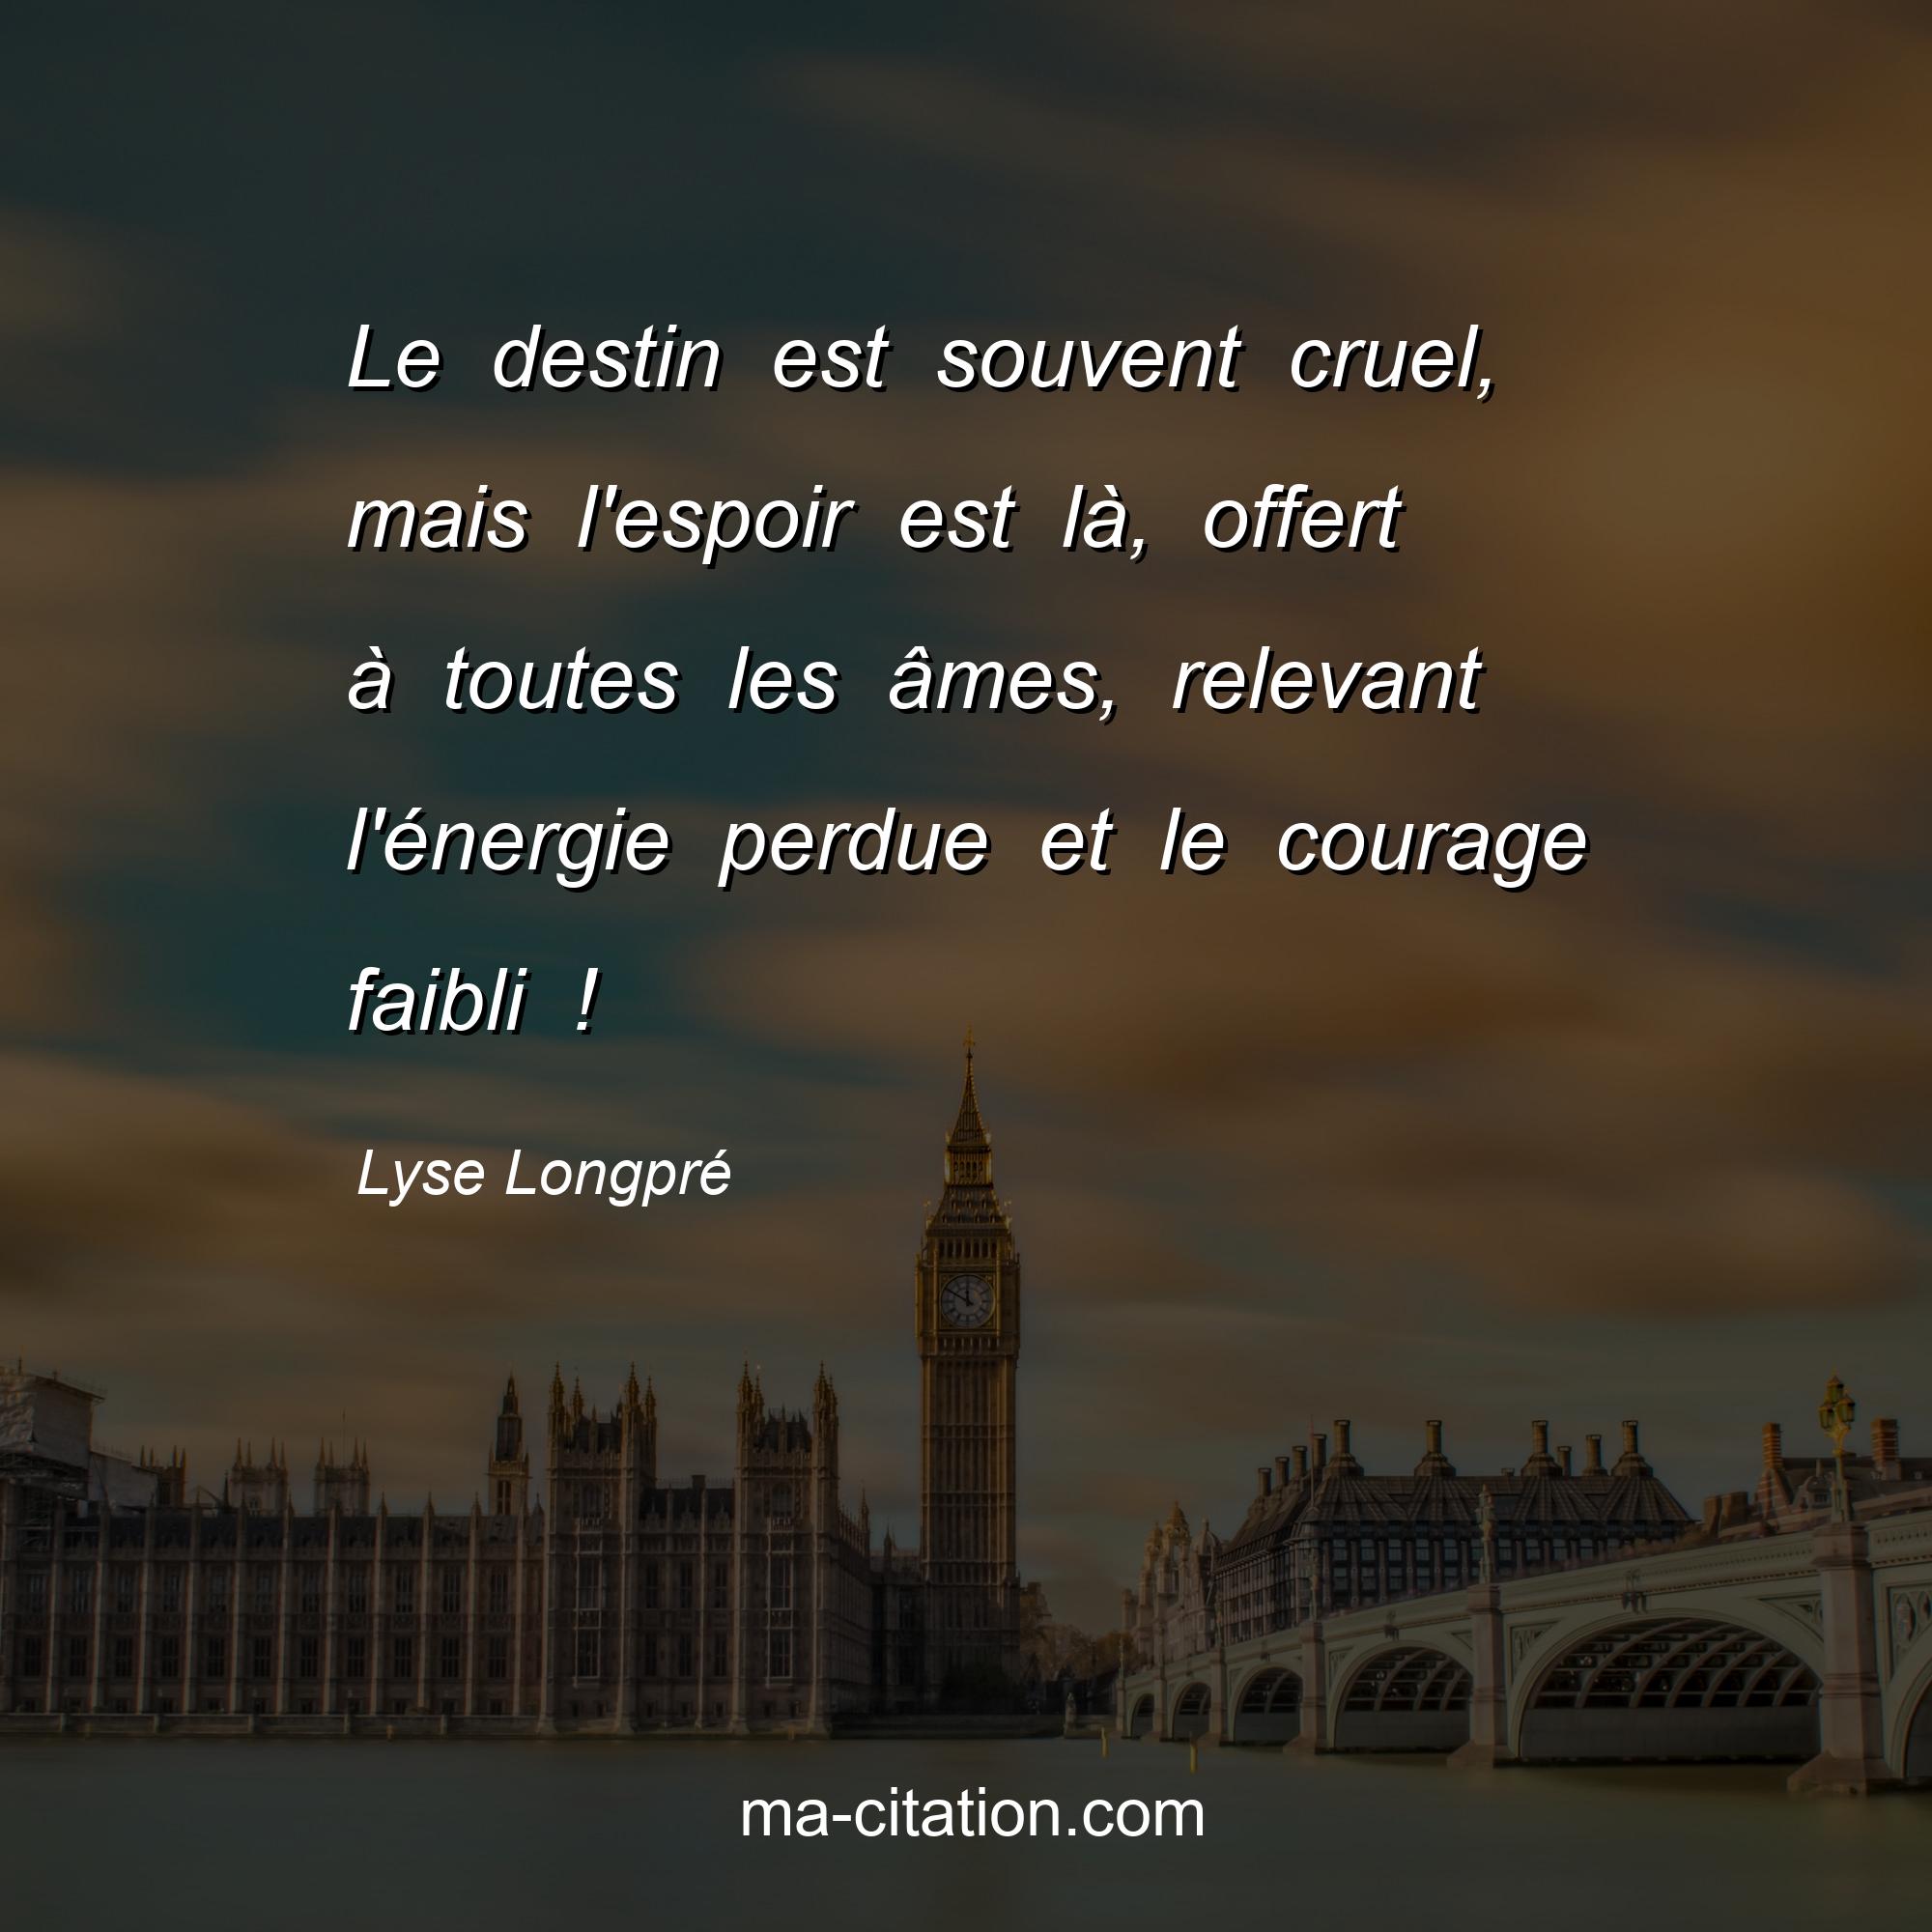 Lyse Longpré : Le destin est souvent cruel, mais l'espoir est là, offert à toutes les âmes, relevant l'énergie perdue et le courage faibli !